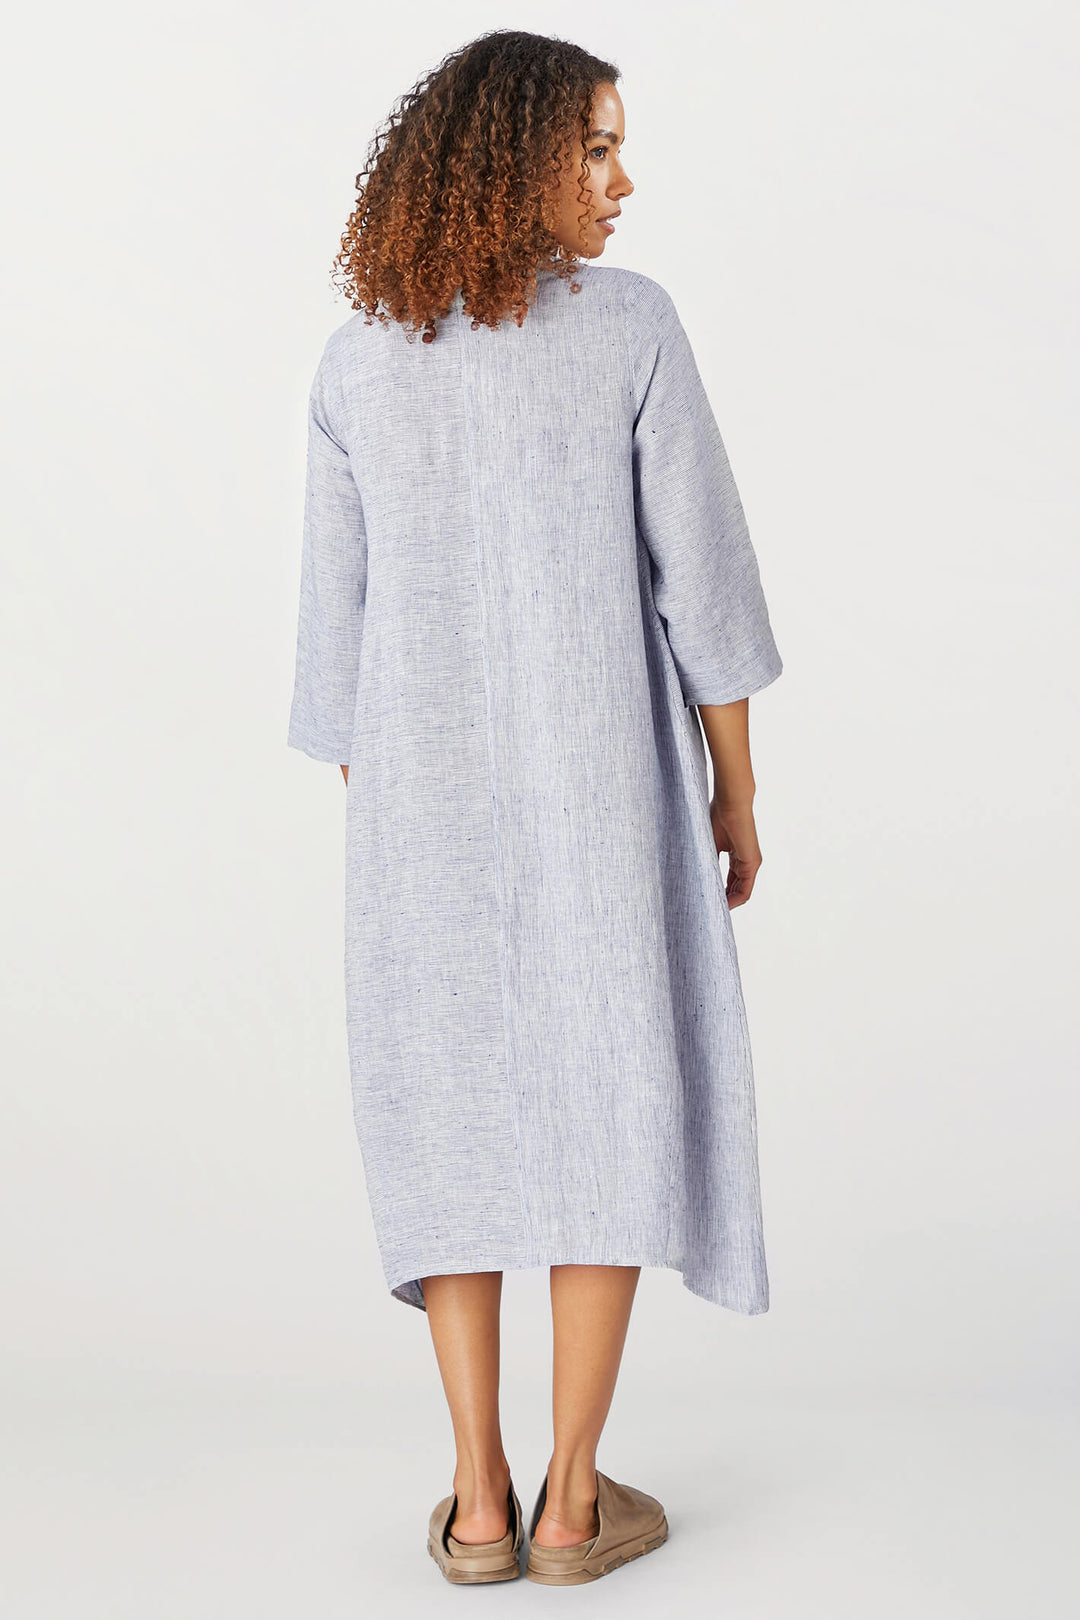 Sahara GRD5148-LTS Linen Ticking Blue Stripe Dress - Shirley Allum Boutique